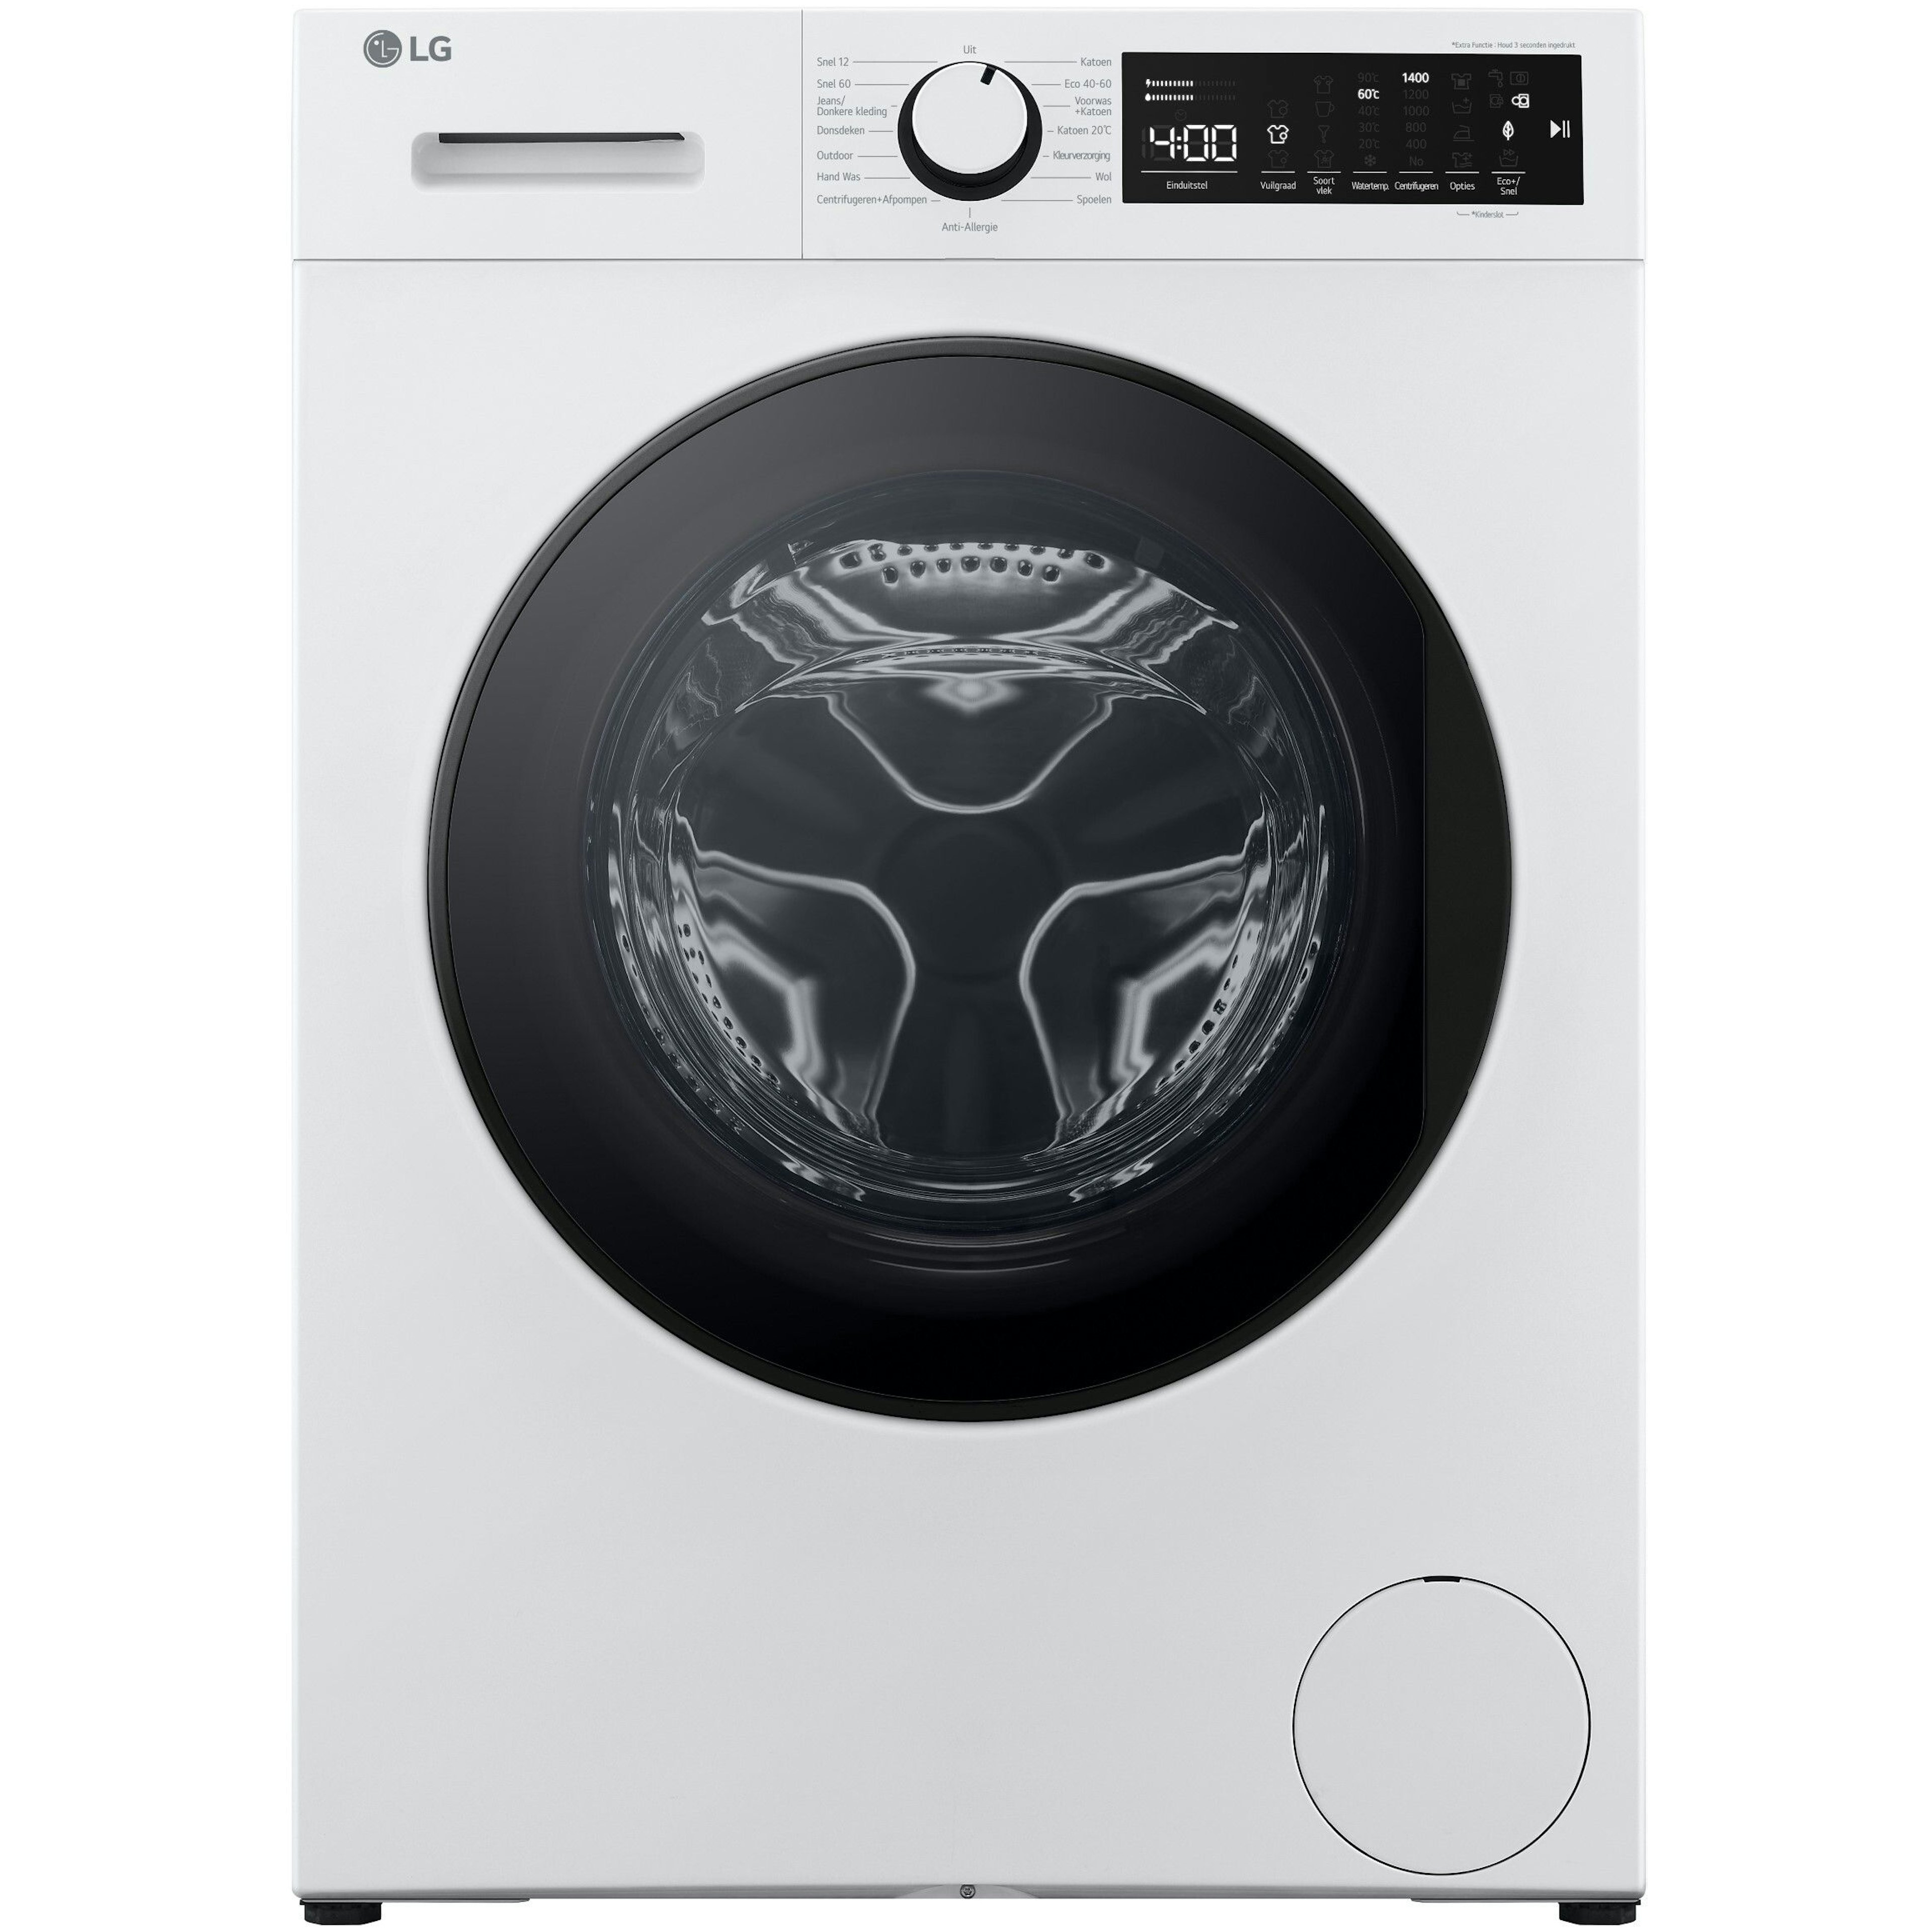 LG F4WM309S0 wasmachine afbeelding 1